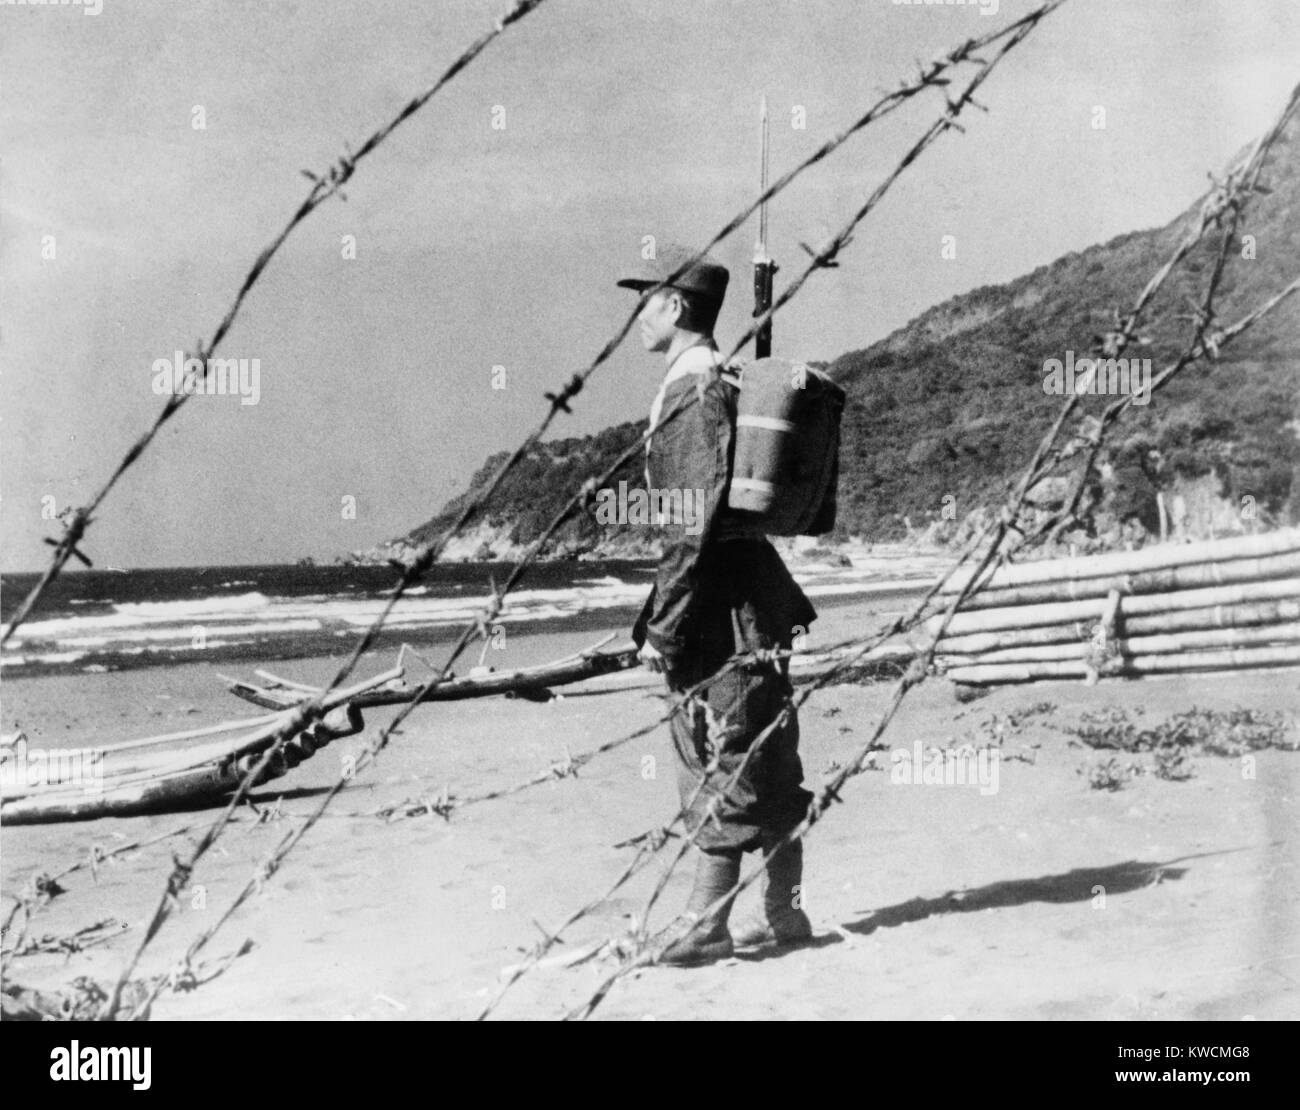 Chinesischen Nationalistischen Soldat wacht an einem Sandstrand irgendwo entlang der Küste von Formosa. Nationalisten und Kommunisten auf dem Festland zu gelegentlichen Auseinandersetzungen in den 1950er und 1960er Jahren. Februar 1, 1955. - (BSLOC 2014 15 173) Stockfoto